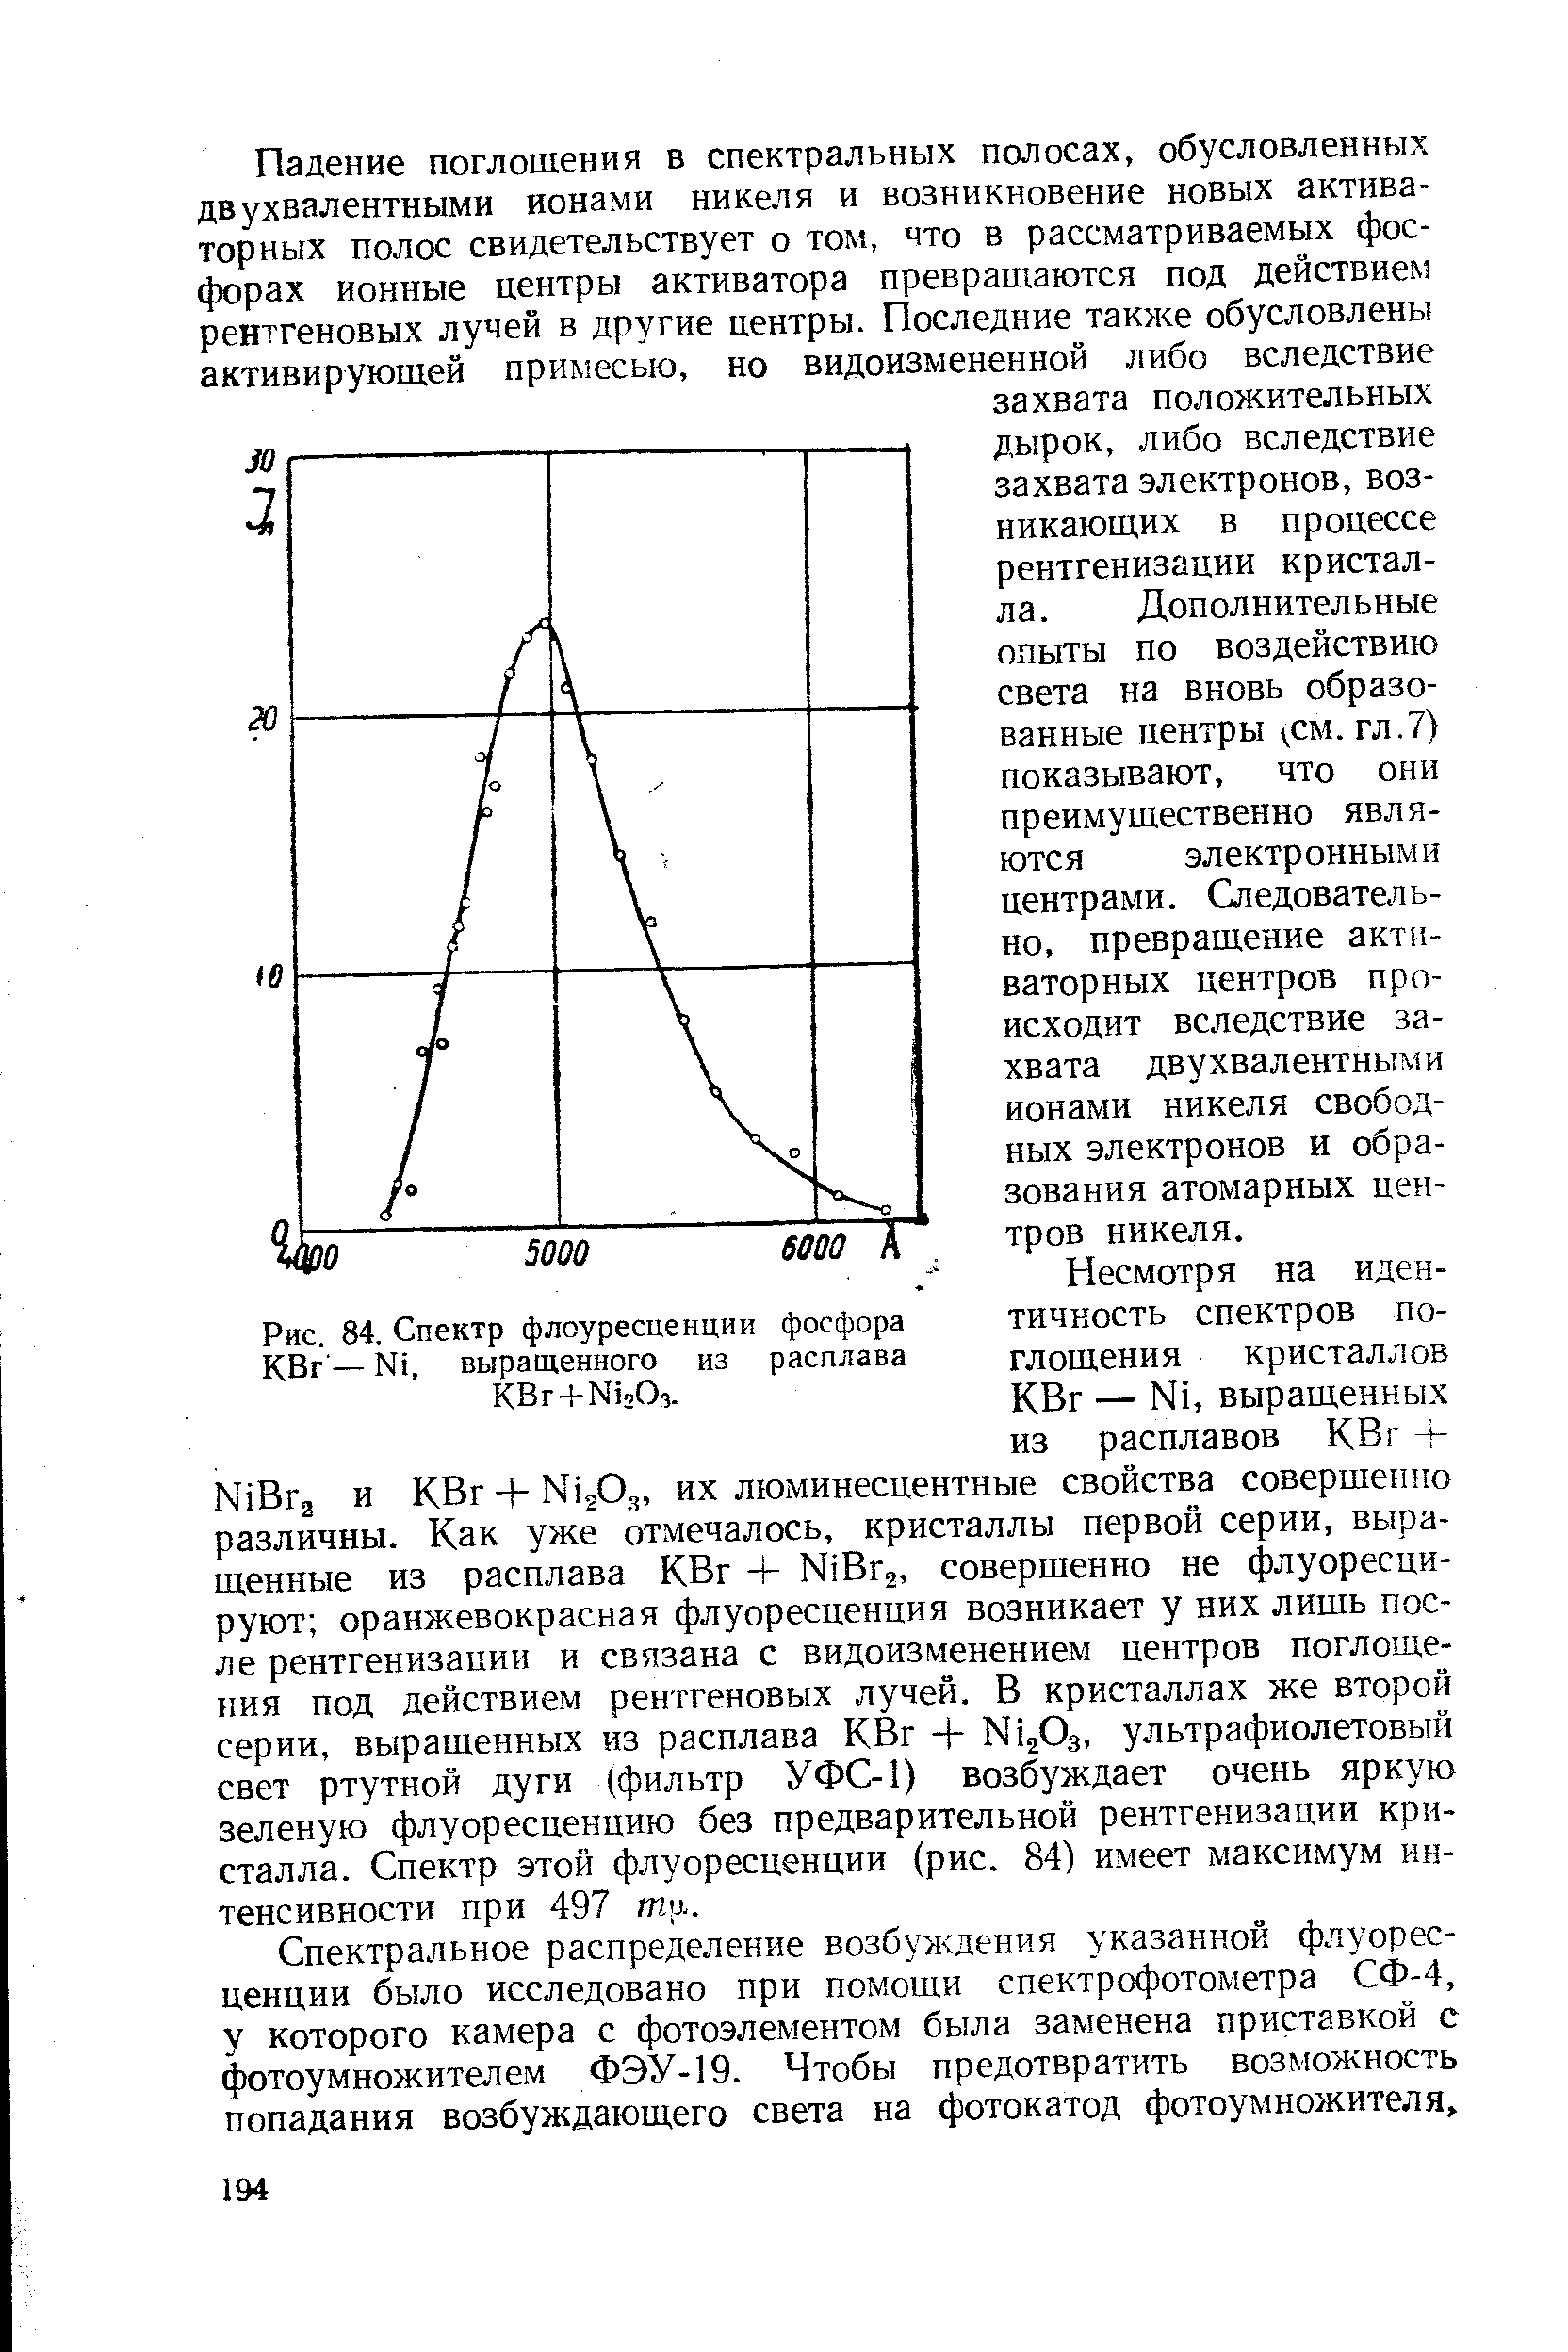 Спектральное распределение возбуждения указанной флуоресценции было исследовано при помощи спектрофотометра СФ-4, у которого камера с фотоэлементом была заменена приставкой с фотоумножителем ФЭУ-19. Чтобы предотвратить возможность попадания возбуждающего света на фотокатод фотоумножителя.
